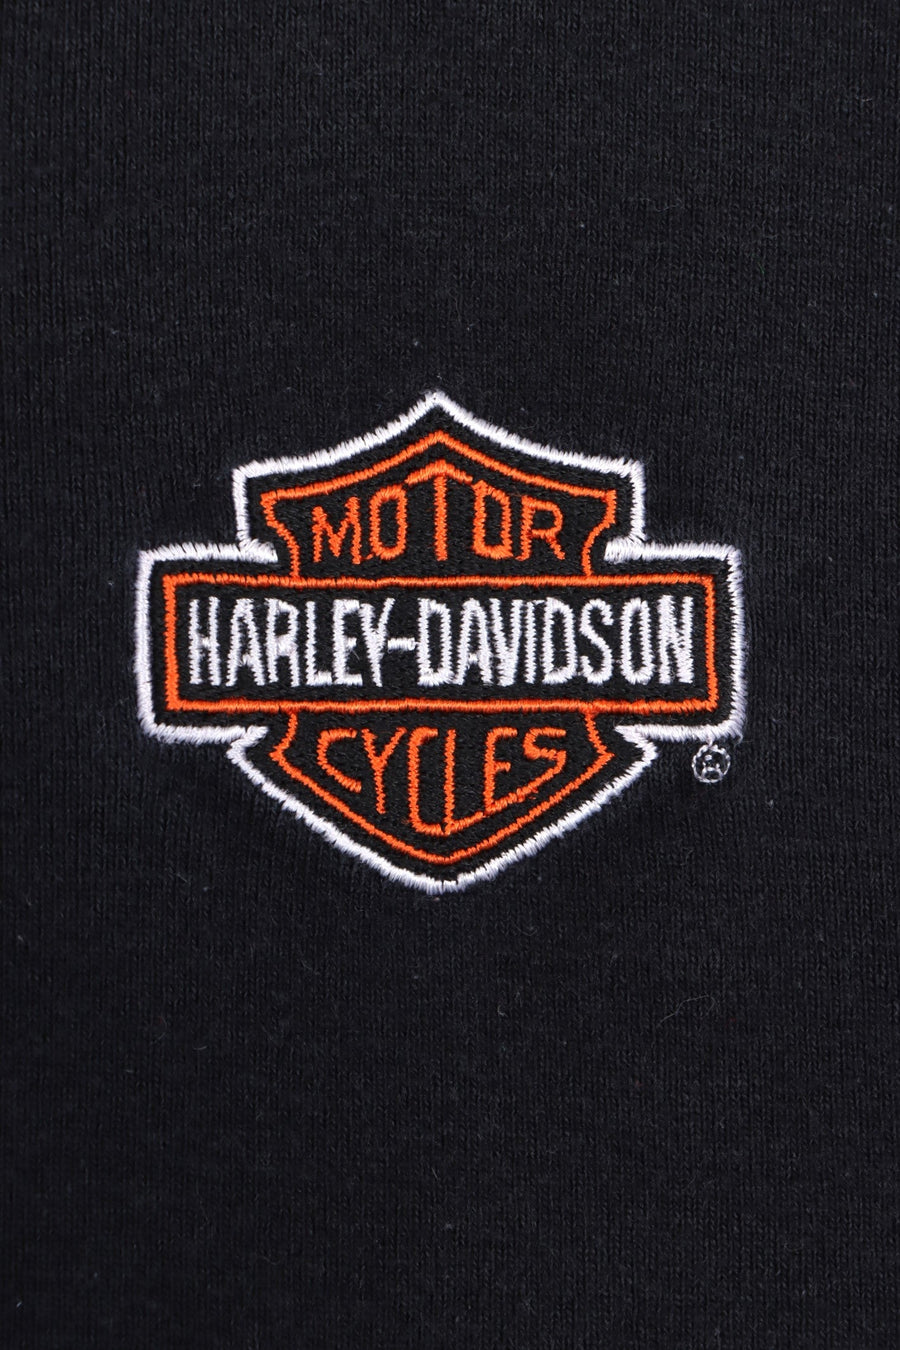 HARLEY DAVIDSON Gilbert's Henley Crop Top USA Made (Women's S-M)